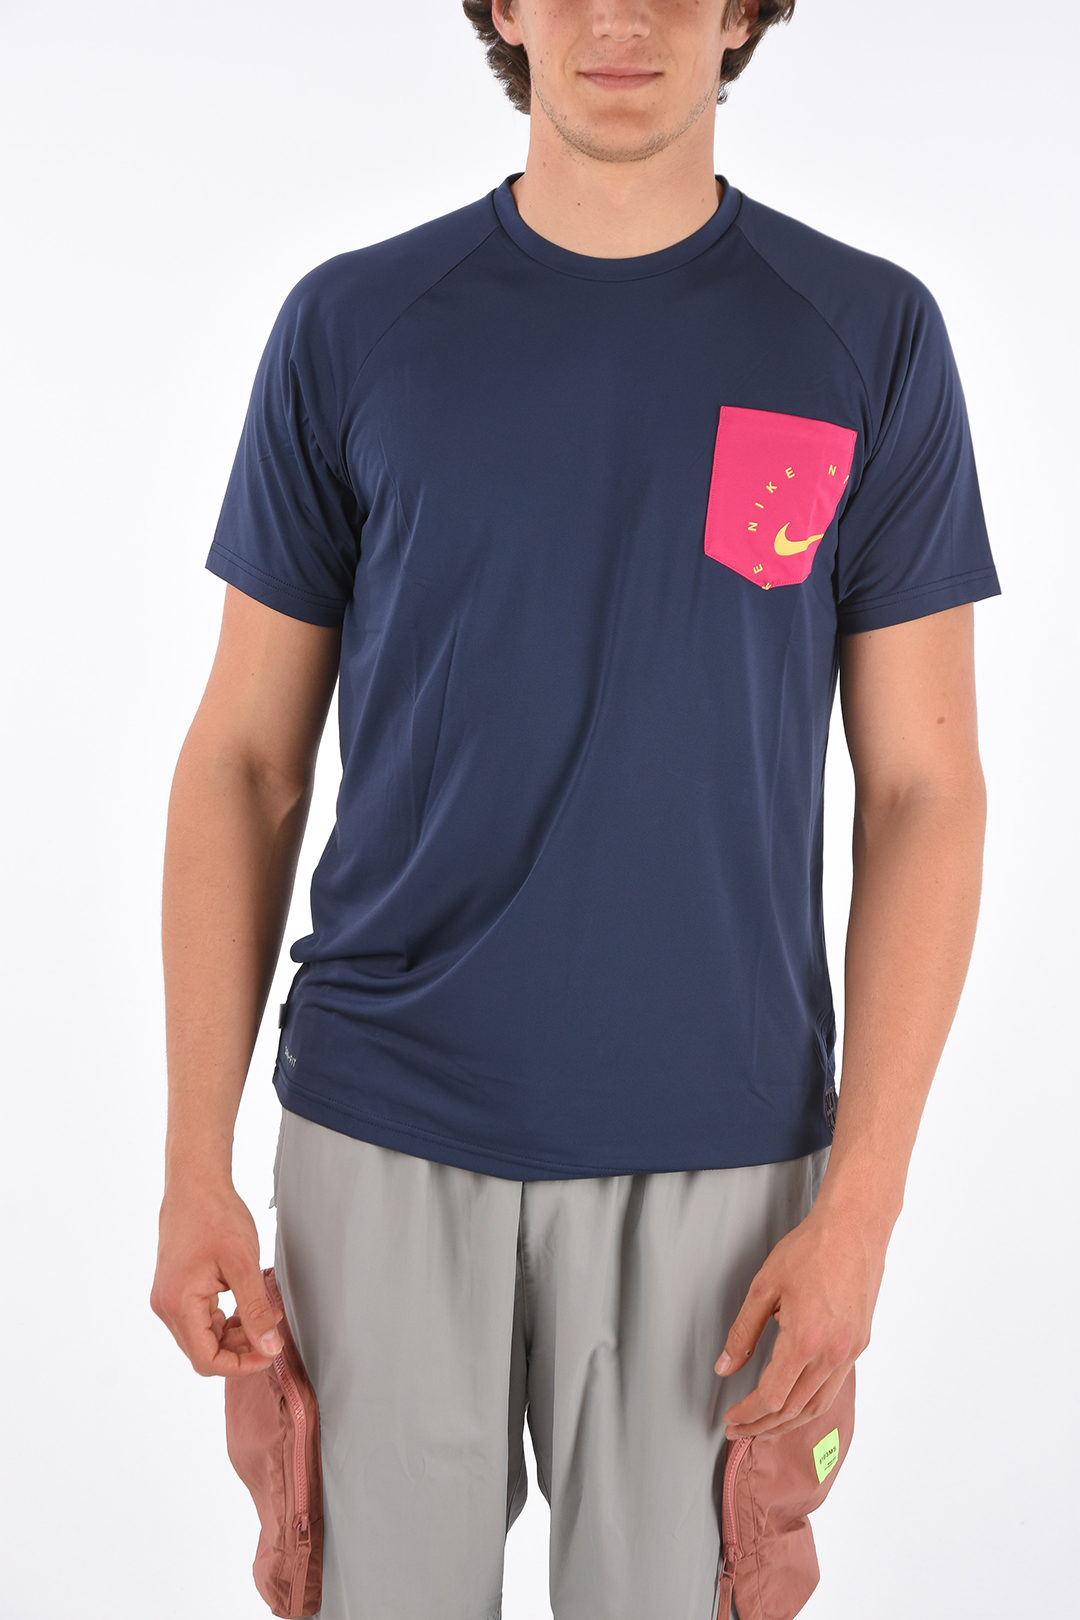 dennenboom Volg ons kamp Nike T-shirt with Breast Pocket men - Glamood Outlet